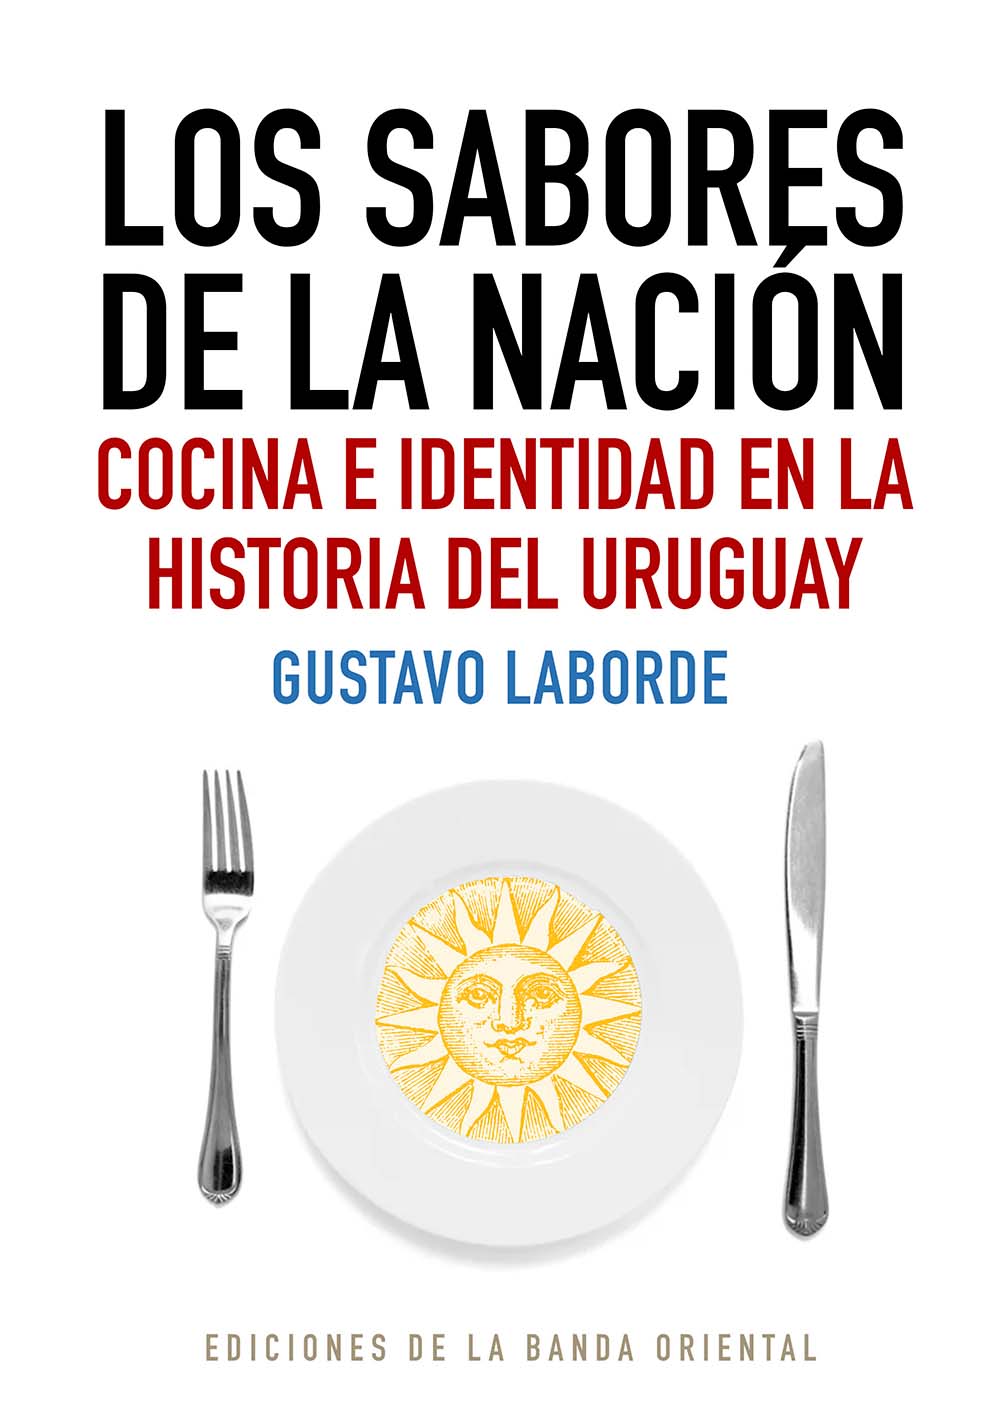 Cover photo of Los sabores de la nación: cocina e identidad en la historia de Uruguay